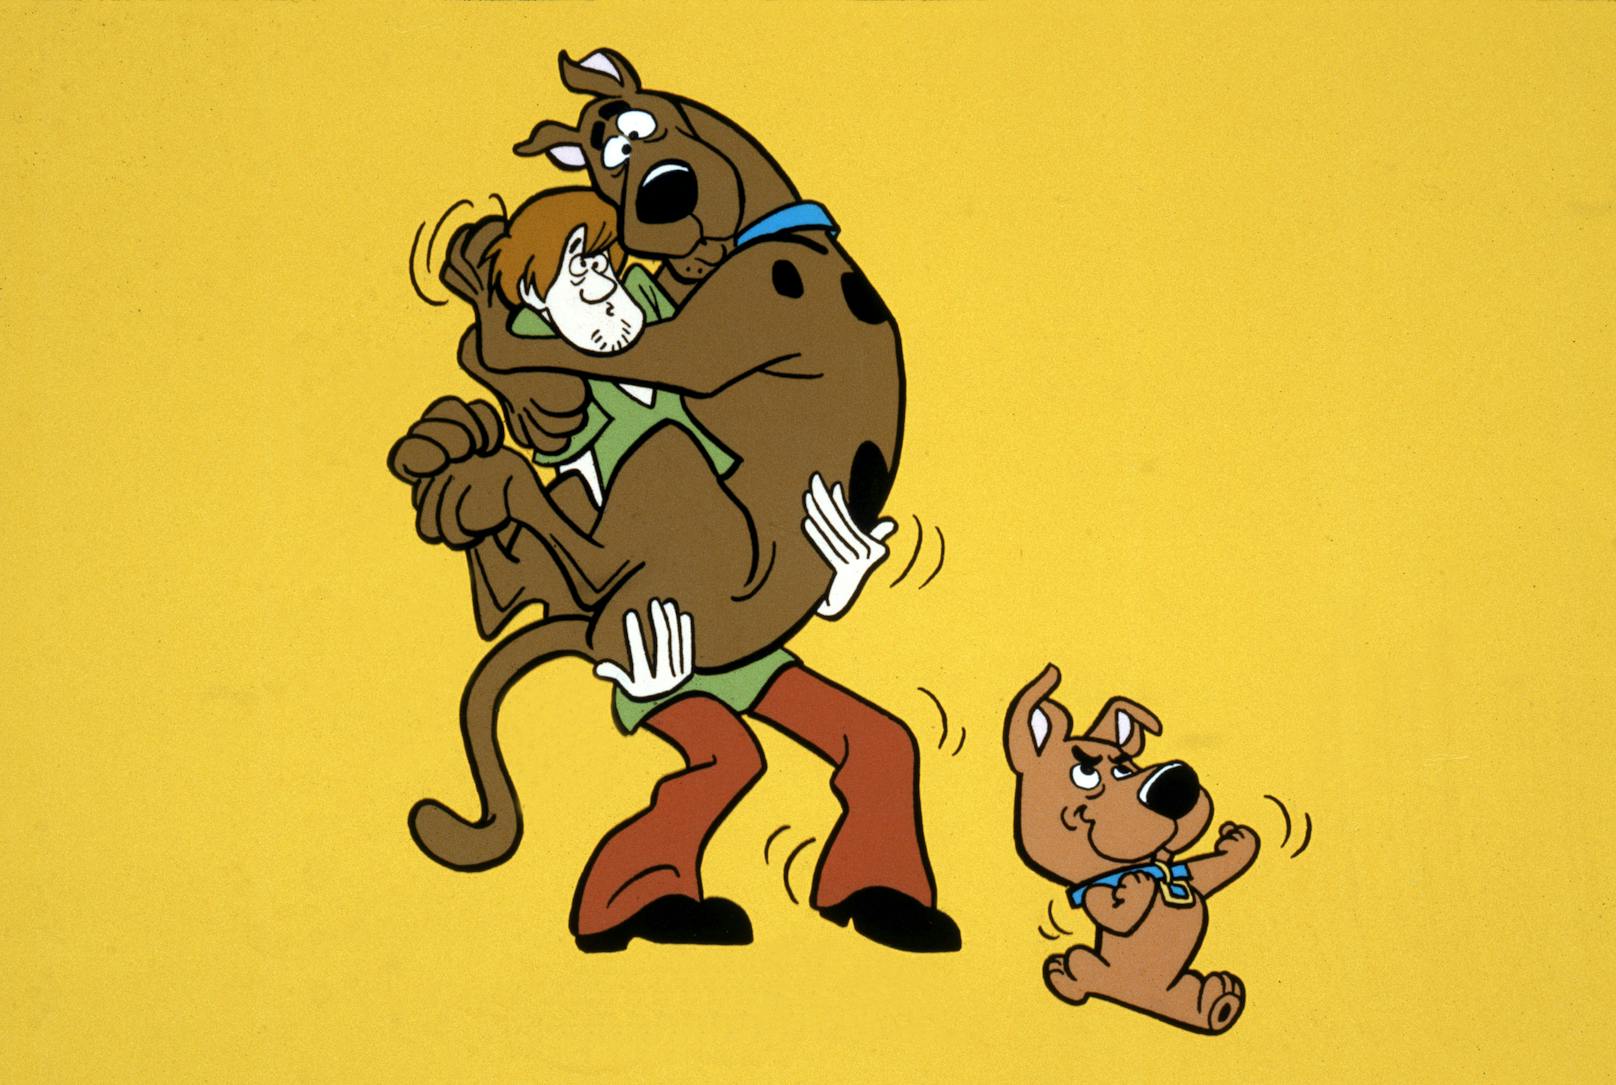 <strong>"SCOOBY-DOO"</strong> soll eine deutsche Dogge darstellen und ist mit seinen menschlichen Freunden auf Geisterjagd. Eines haben die Zeichentrick- und die echte Dogge aber gemeinsam: Beide gehören nicht unbedingt zur mutigsten Rasse, der imposanten Größe zum Trotz. 